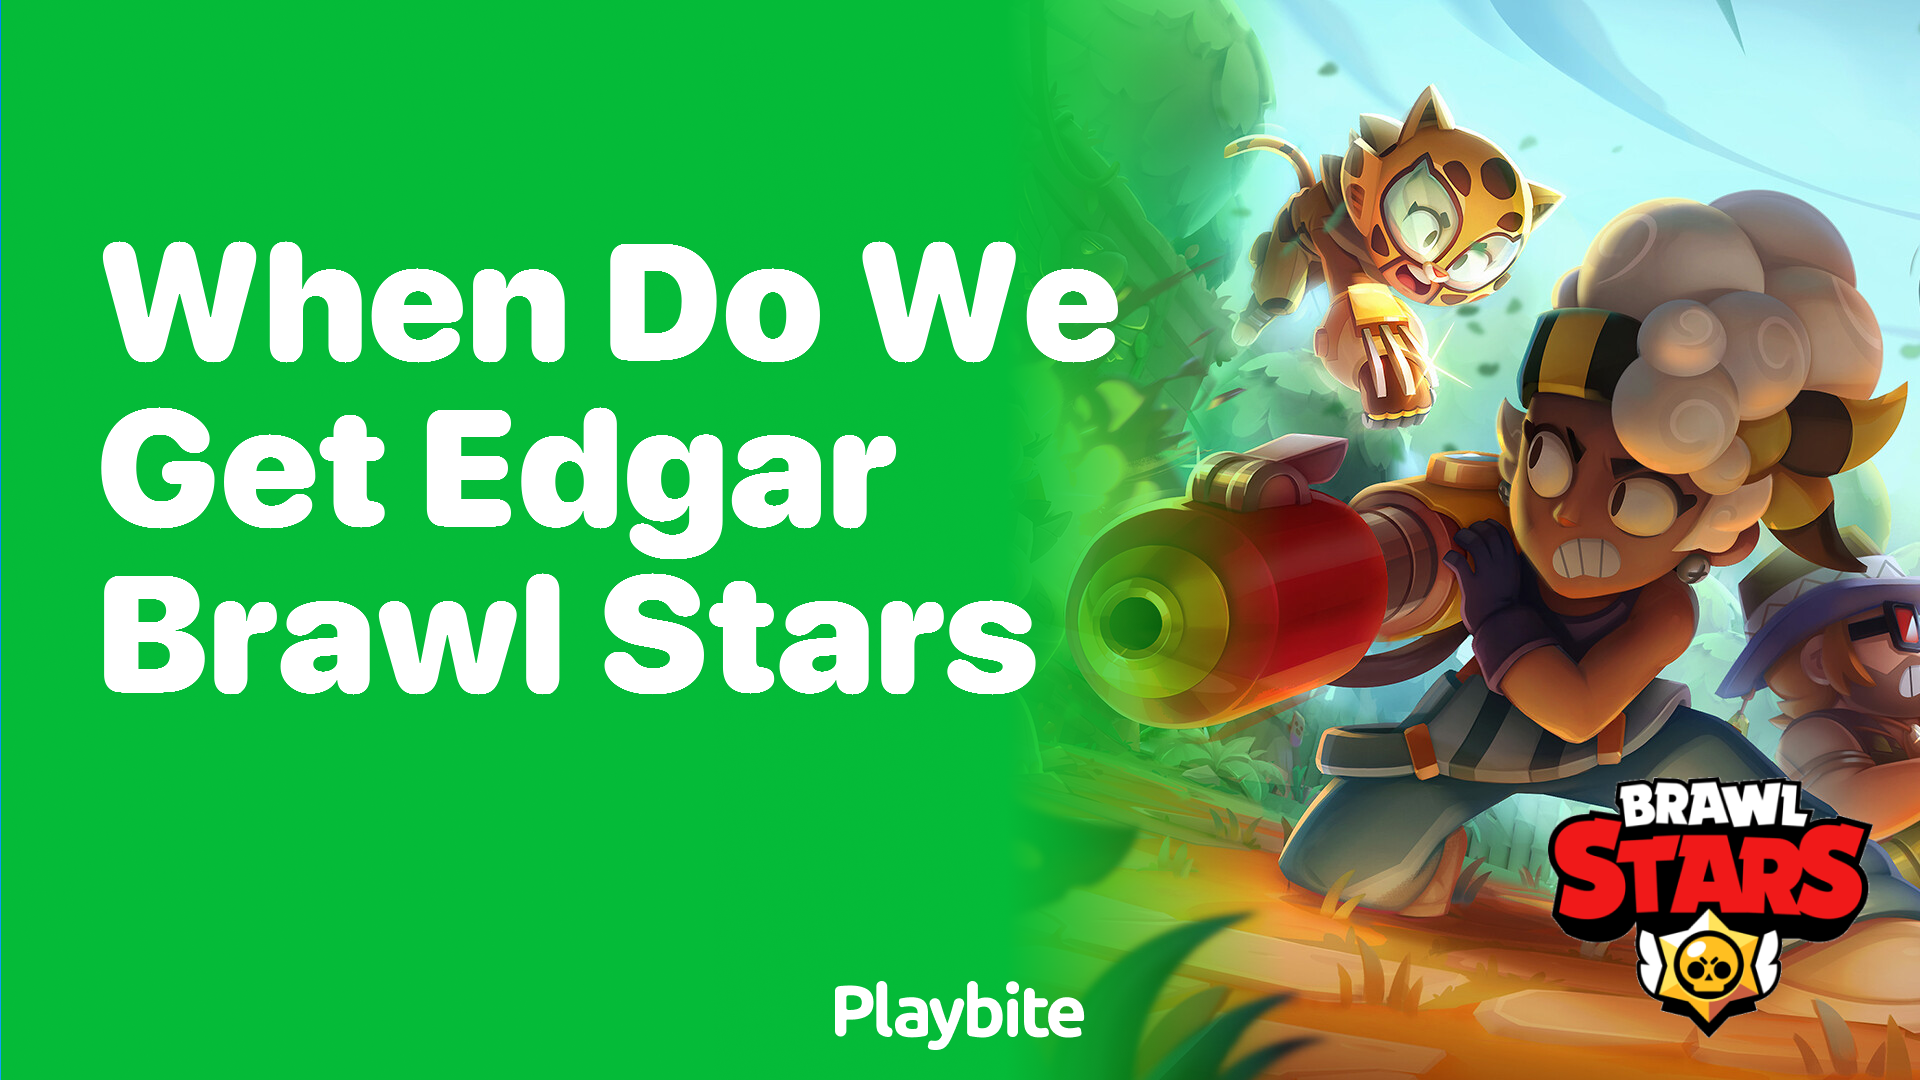 When Do We Get Edgar in Brawl Stars? - Playbite